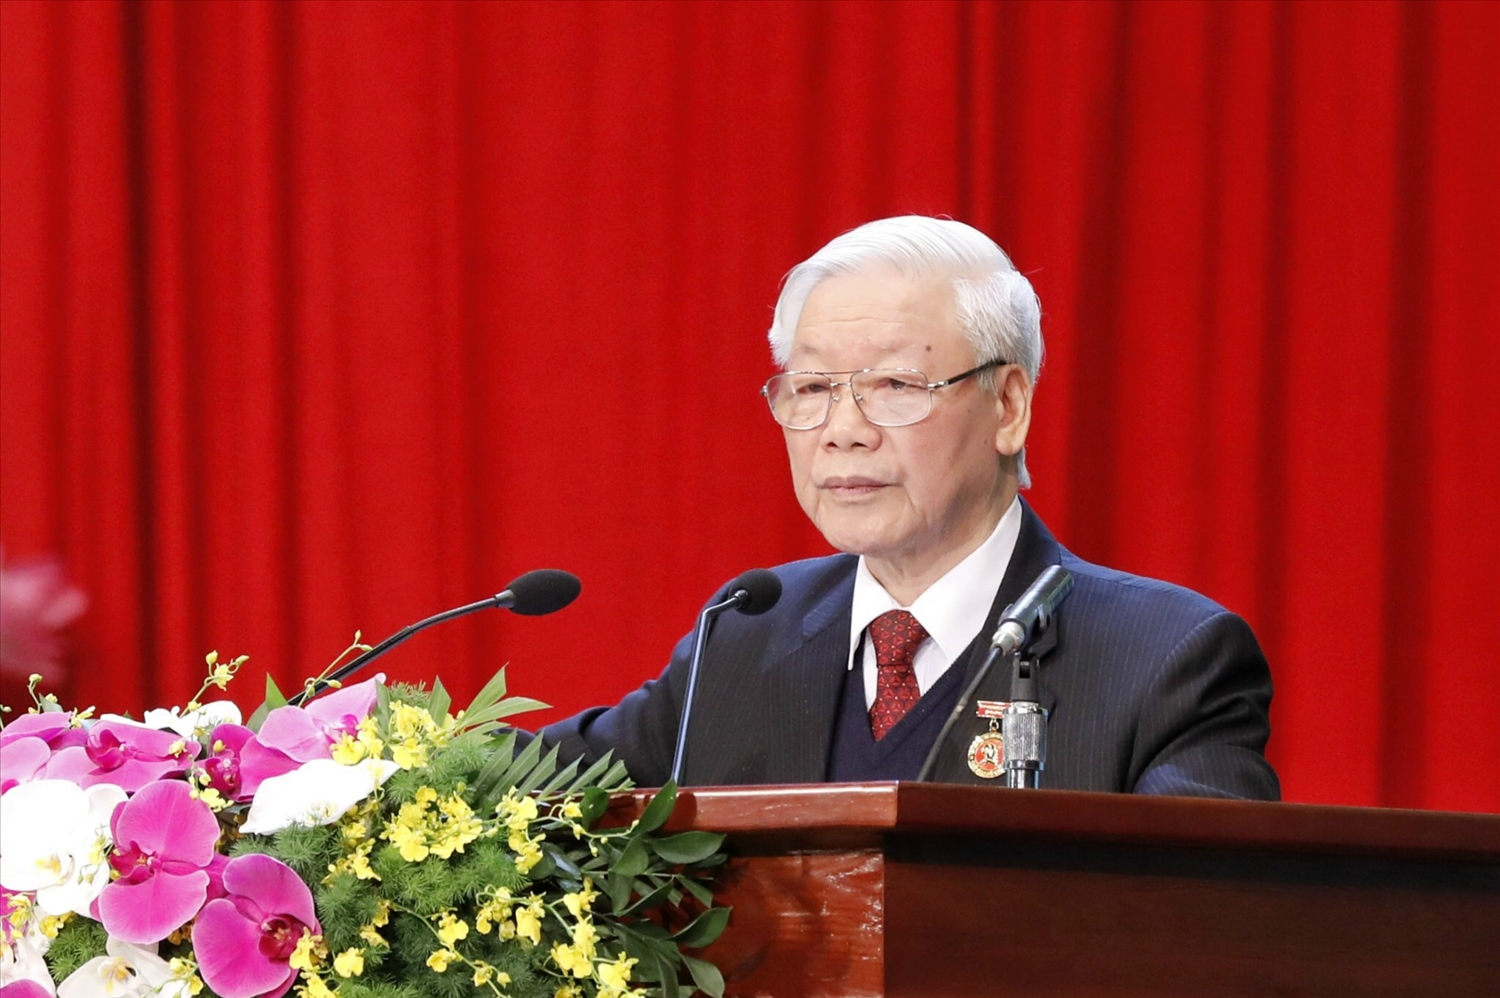 Lời kêu gọi của Tổng bí thư Nguyễn Phú Trọng